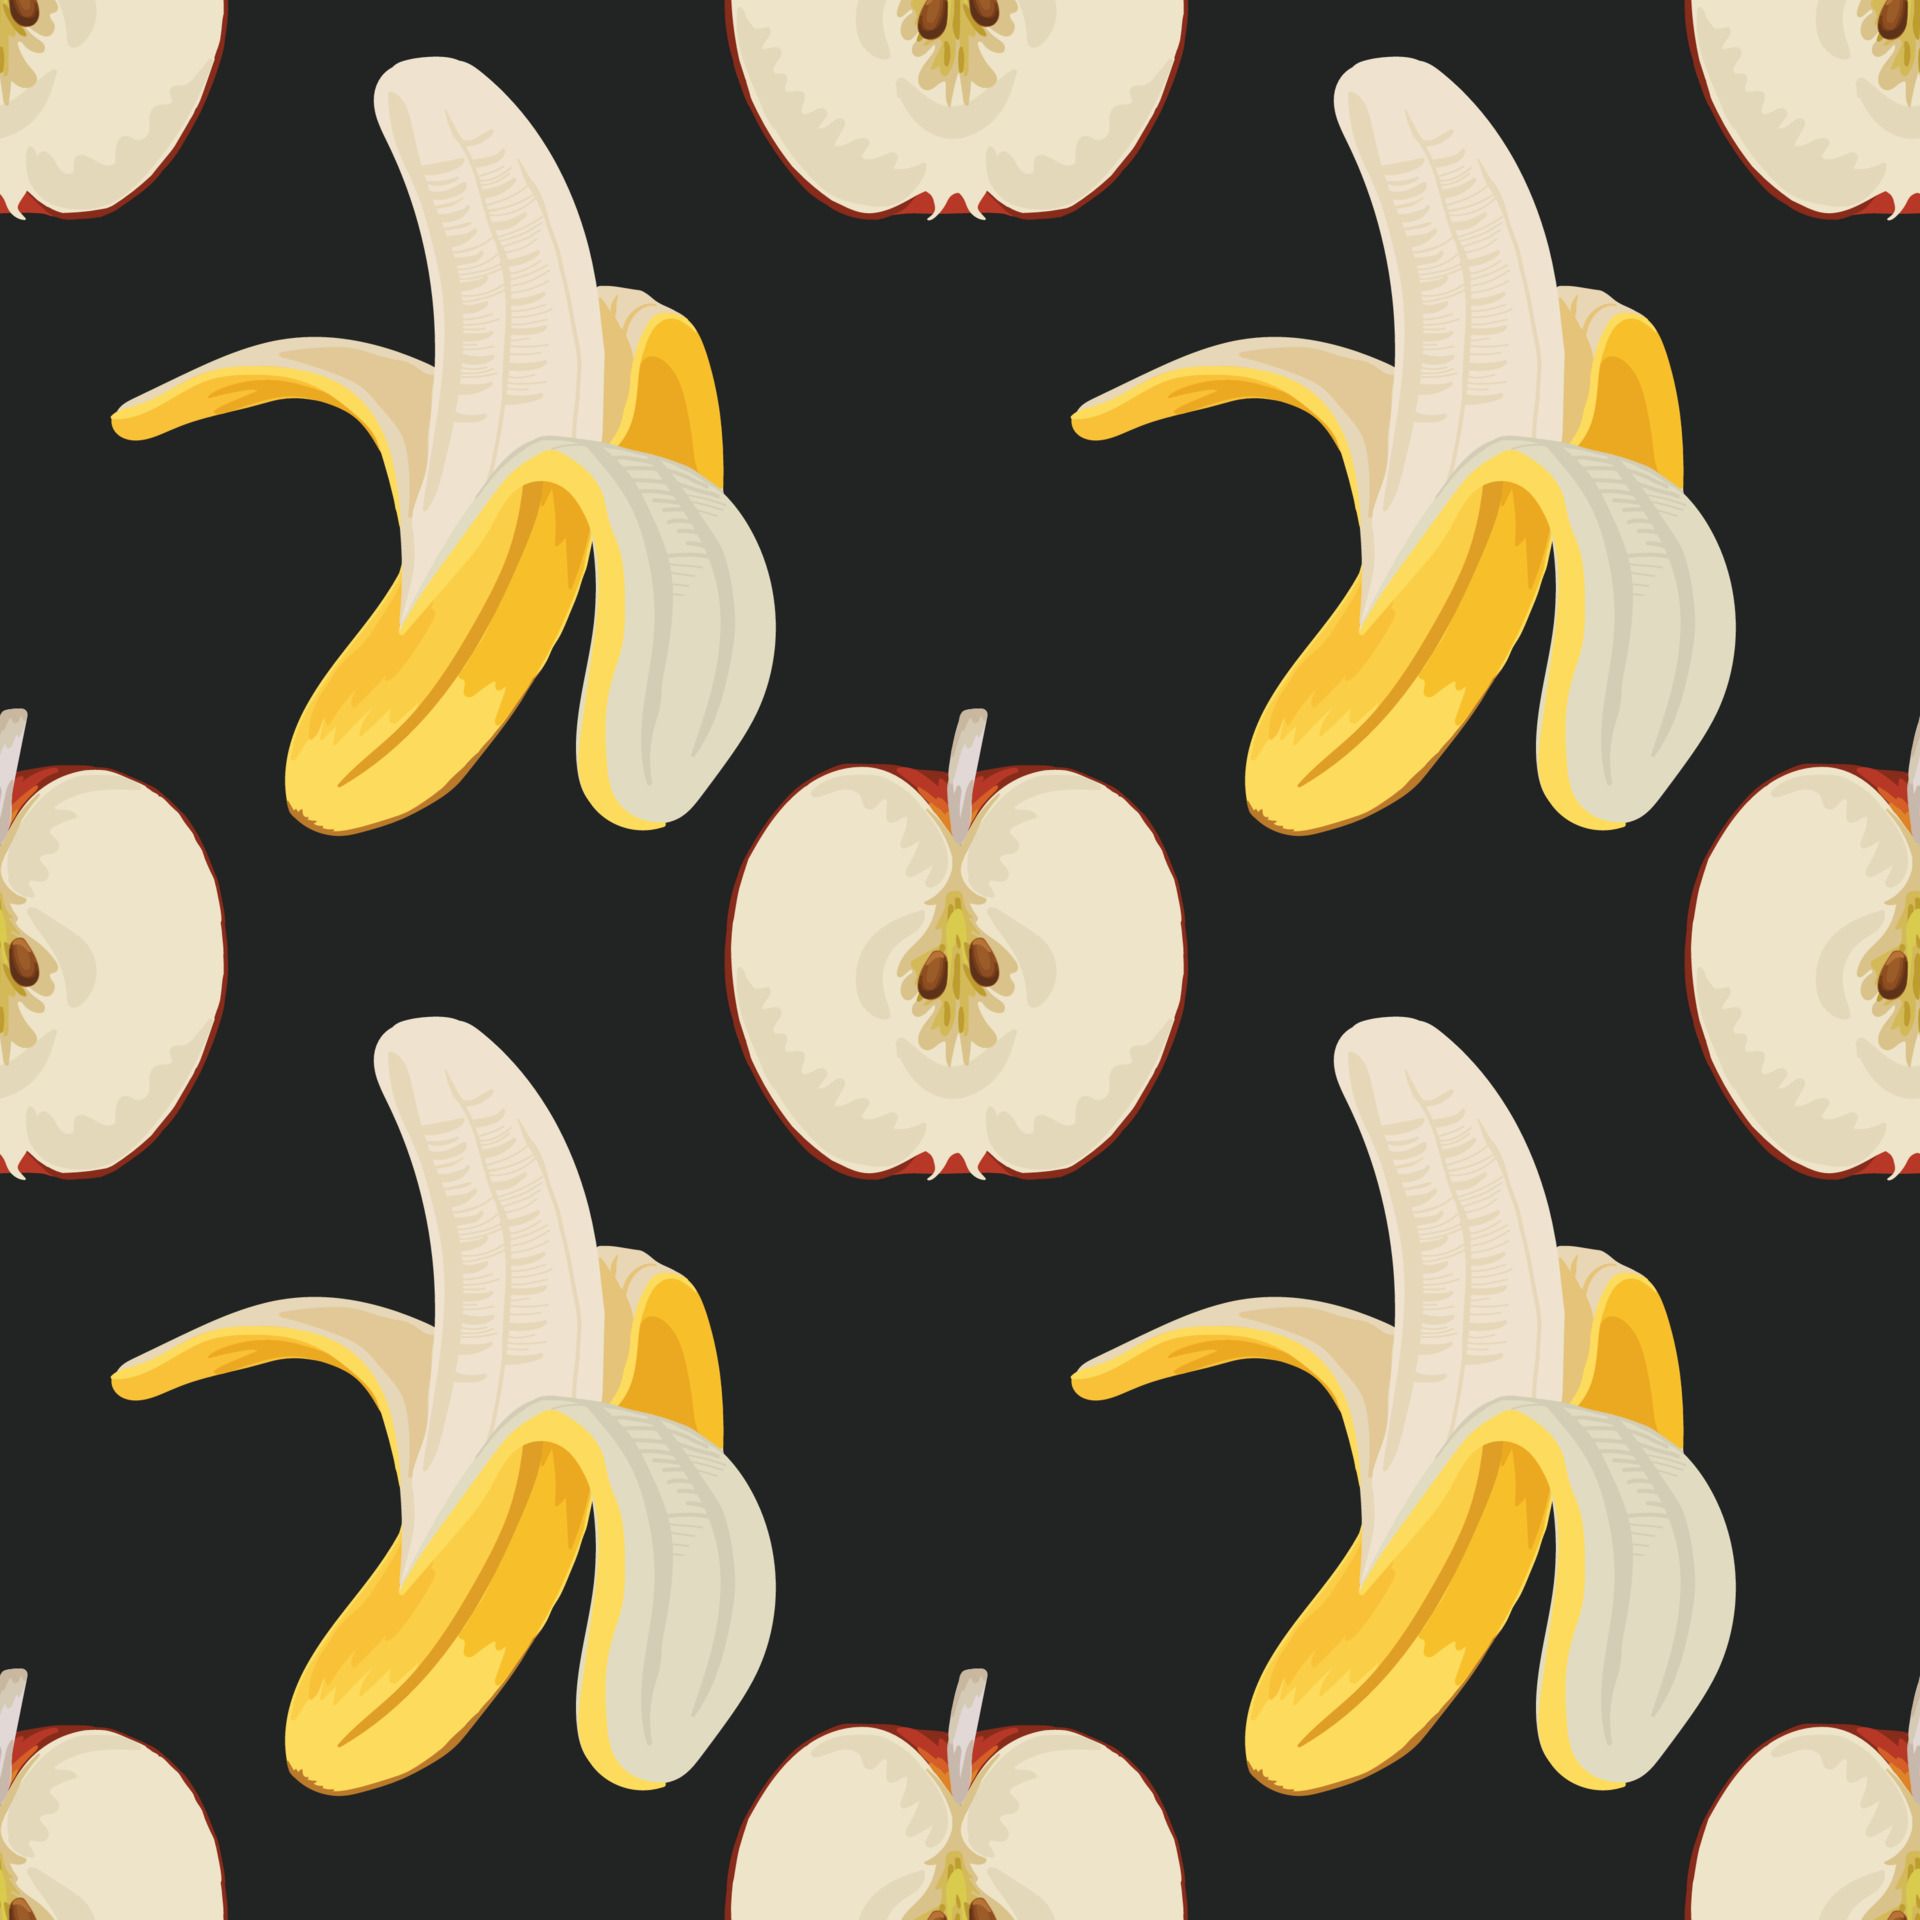 A pattern of half bananas and apples - Banana